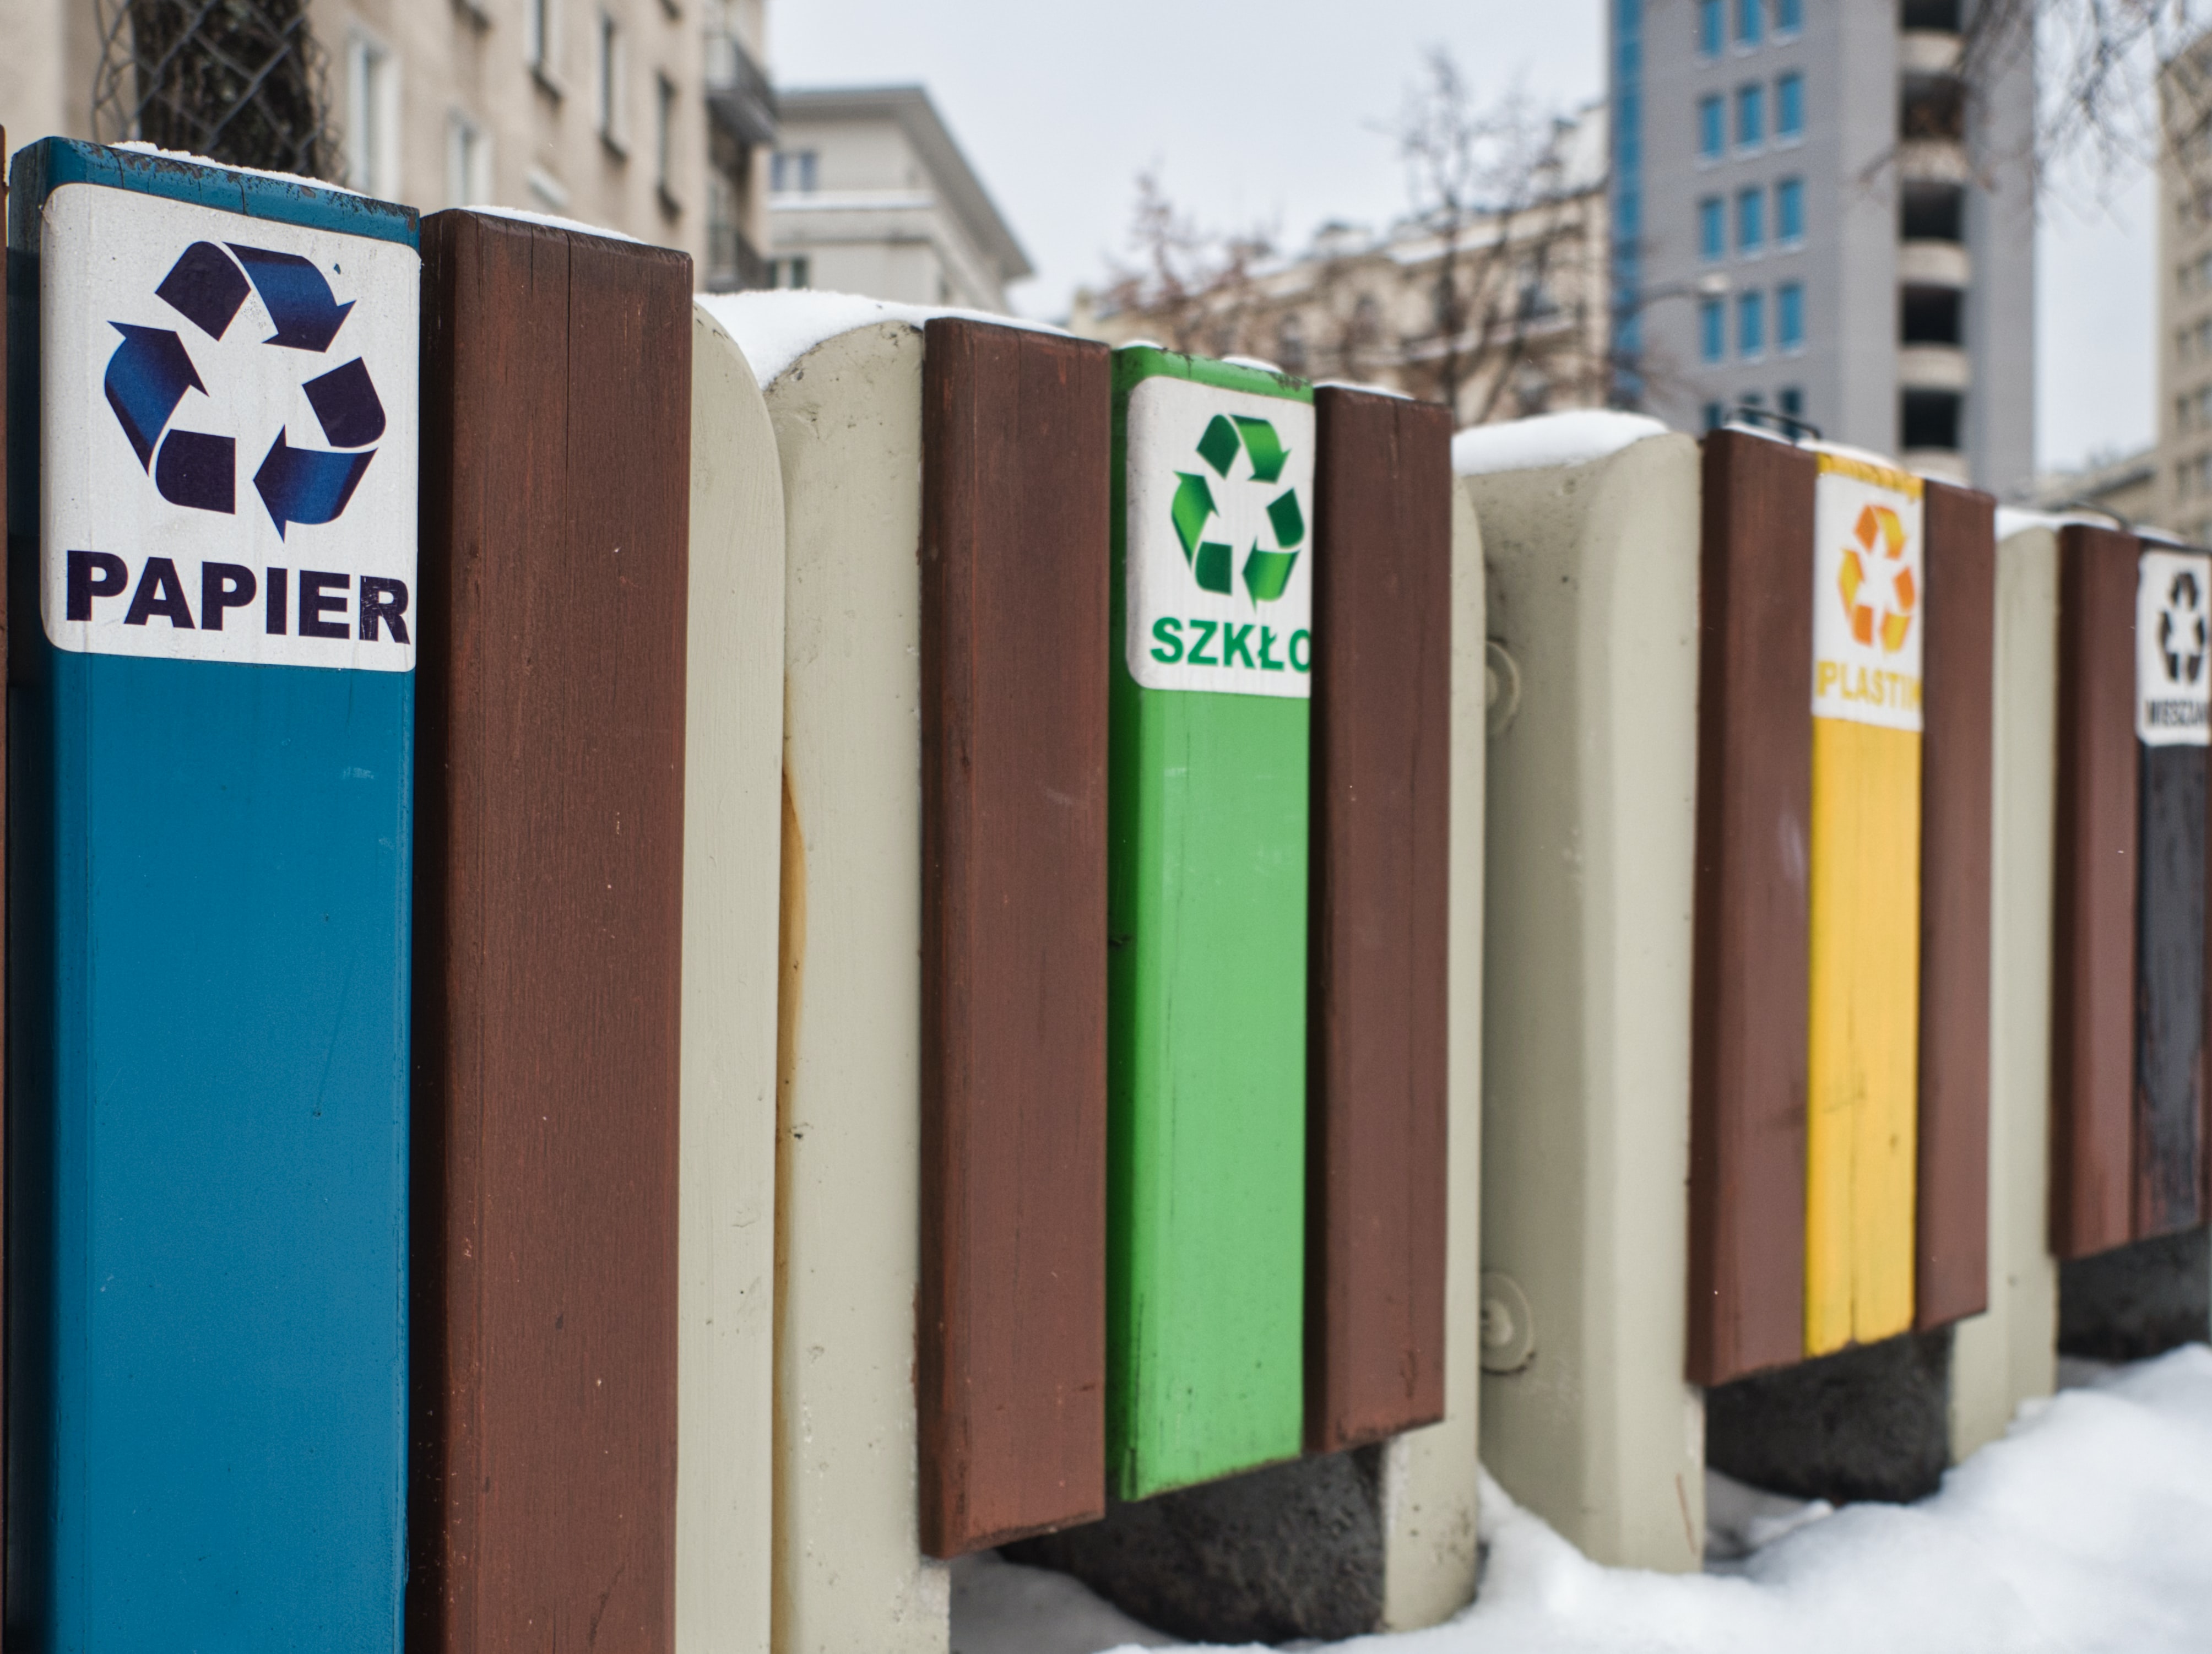 Mực in Greentech nhờ sử dụng công nghệ tái chế giúp tiết kiệm chi phí in ấn